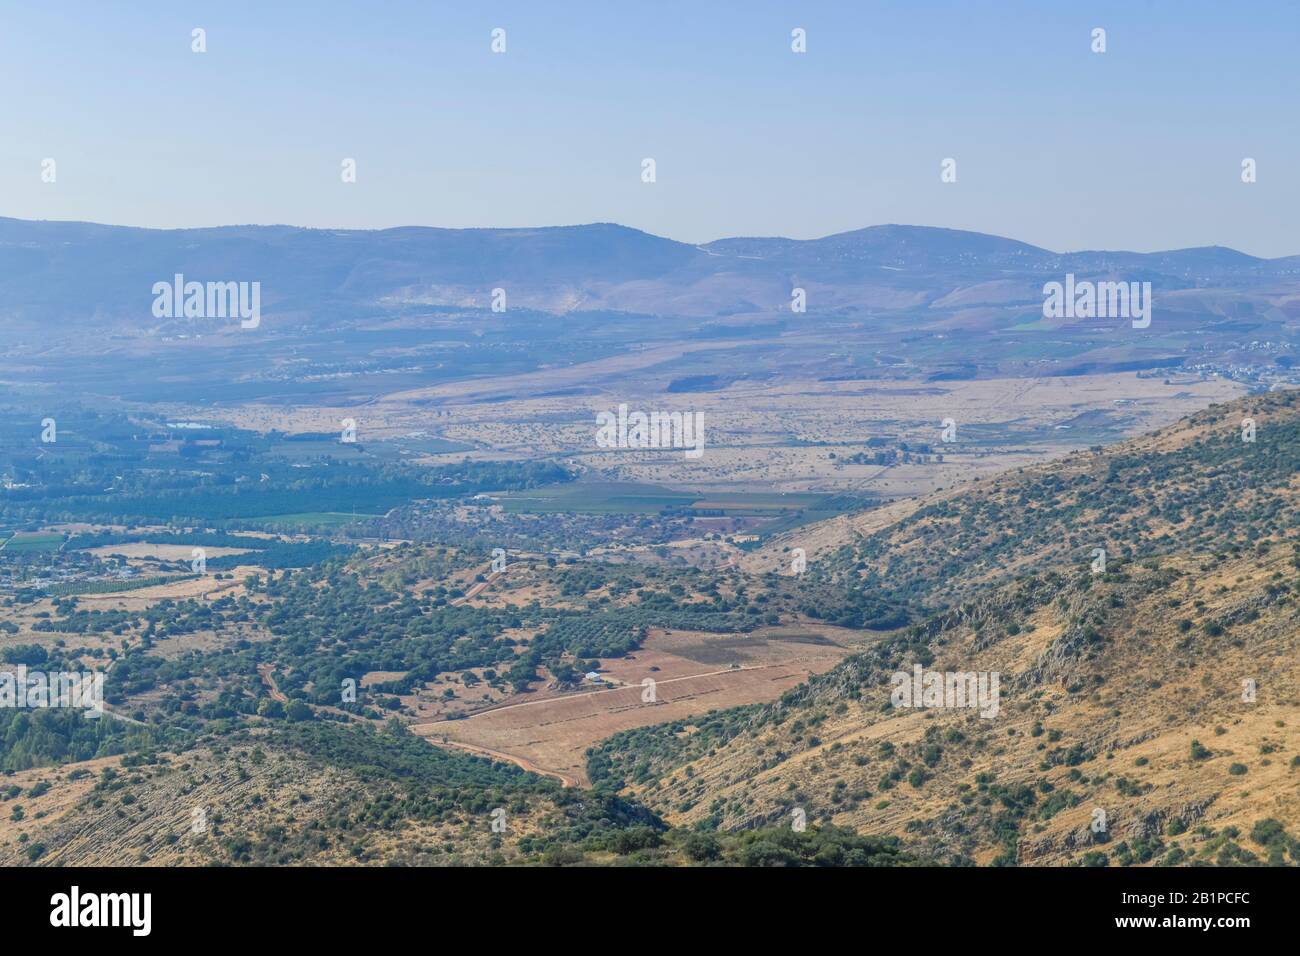 Blick von der Festung Nimrod auf die Hula-Ebene, Nord-Israele. Hinten Berge Des Libanon Foto Stock